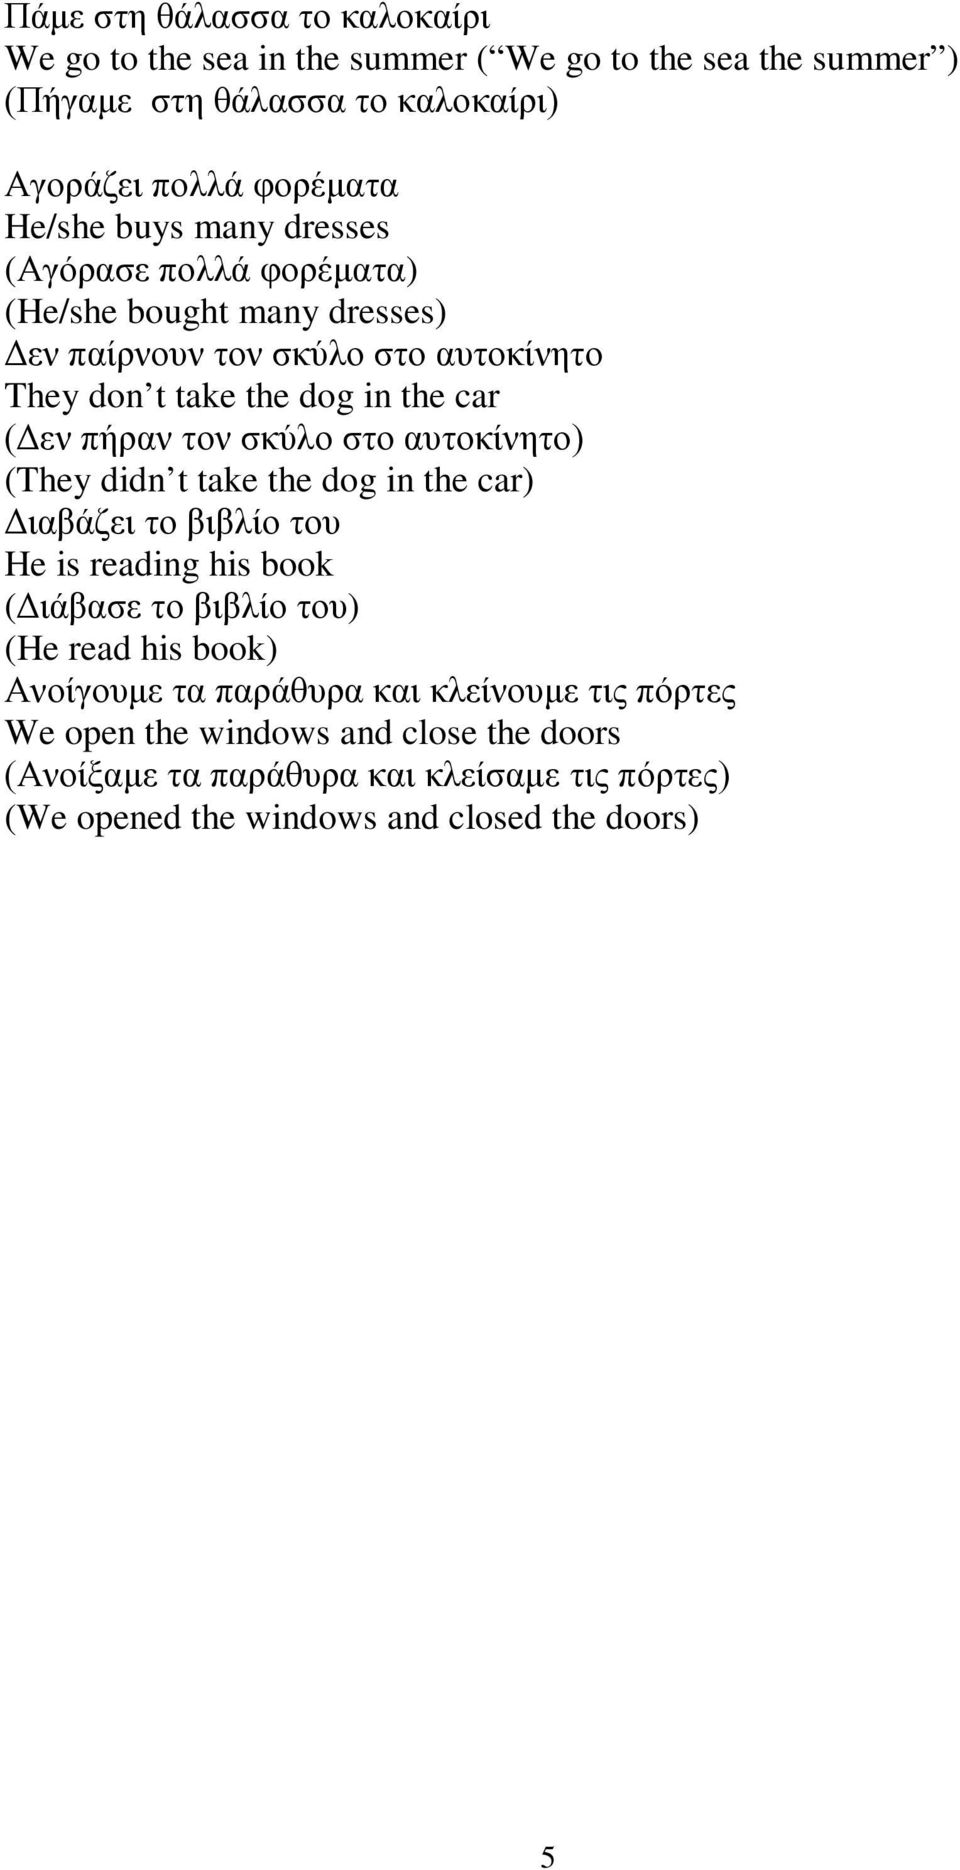 σκύλο στο αυτοκίνητο) (They didn t take the dog in the car) Διαβάζει το βιβλίο του He is reading his book (Διάβασε το βιβλίο του) (He read his book) Ανοίγουμε τα